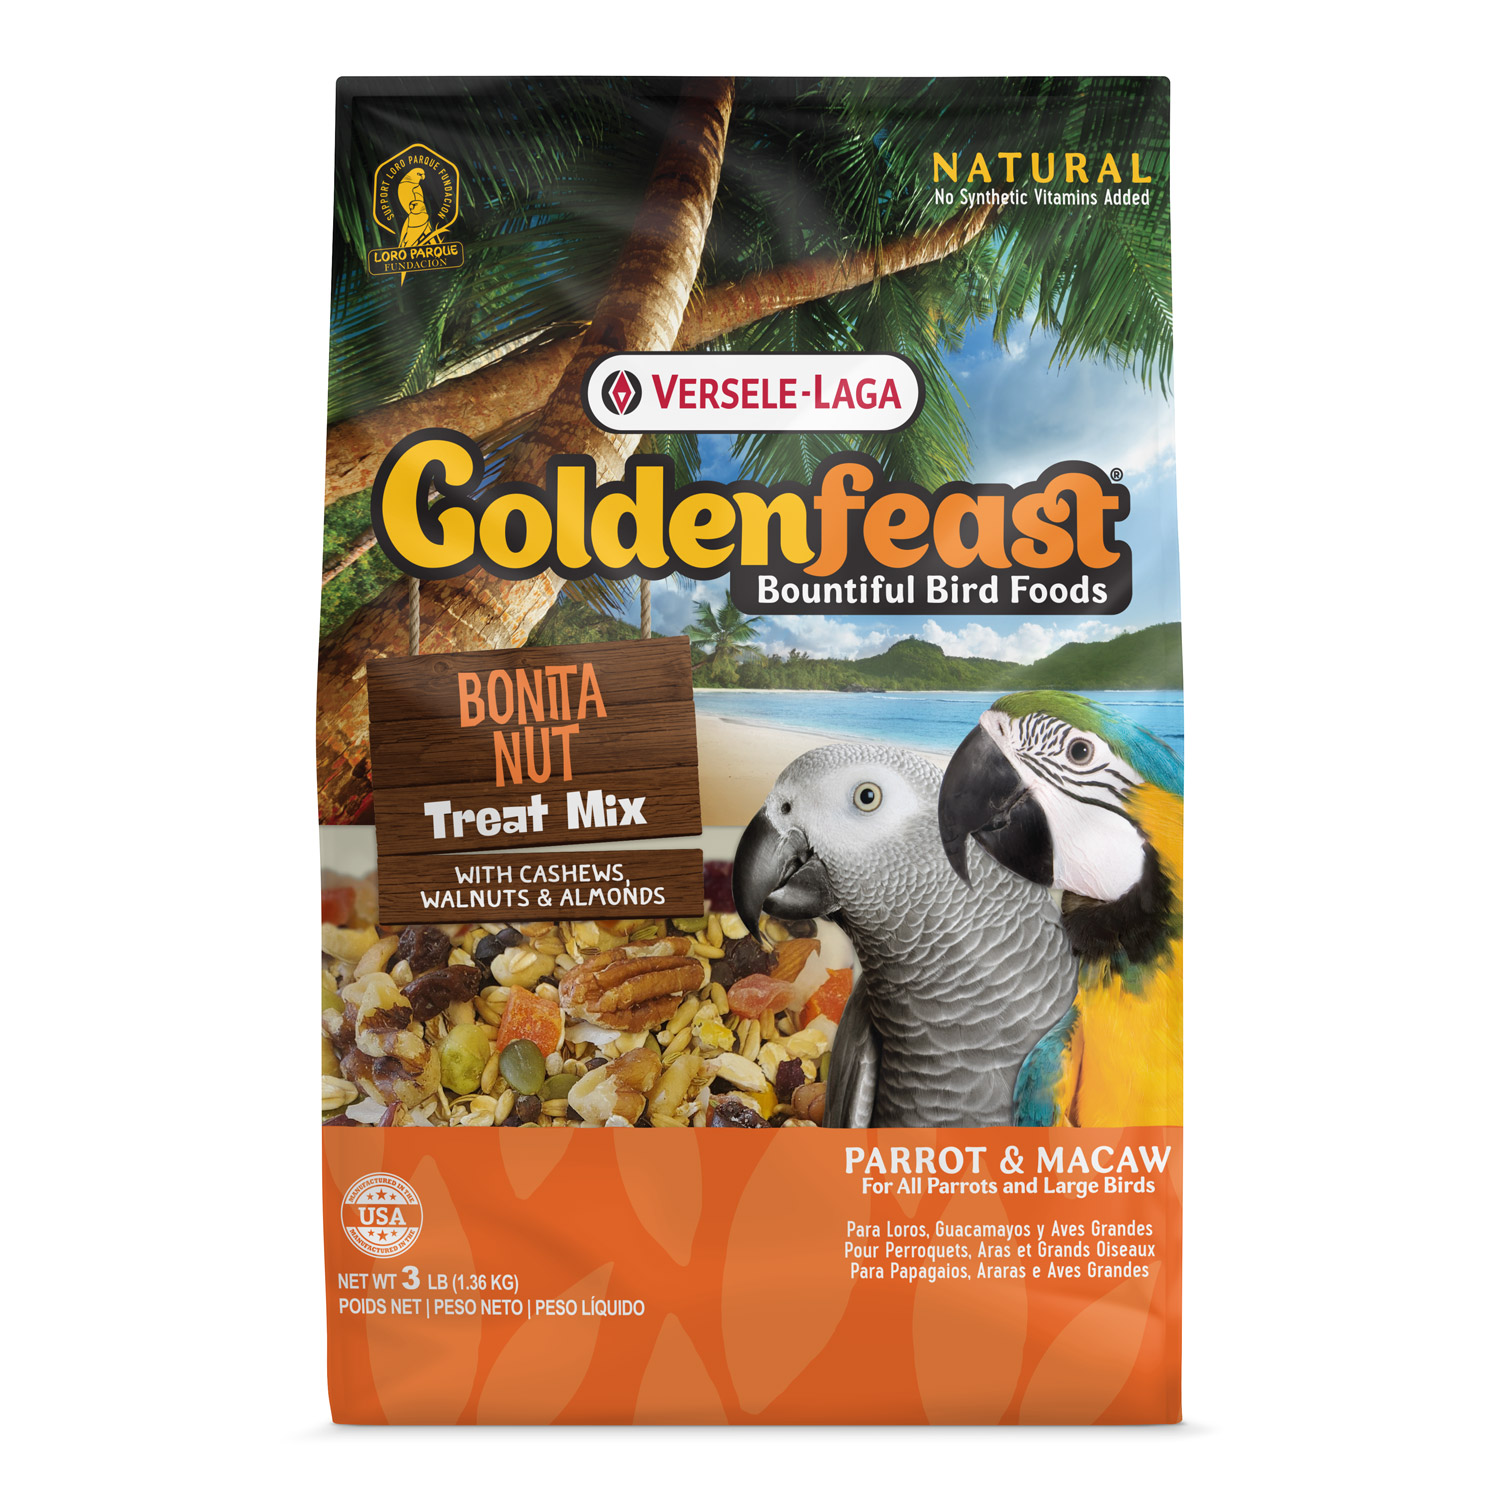 VL Goldenfeast Bonita Nut Treat Mix, 3 lb Bag